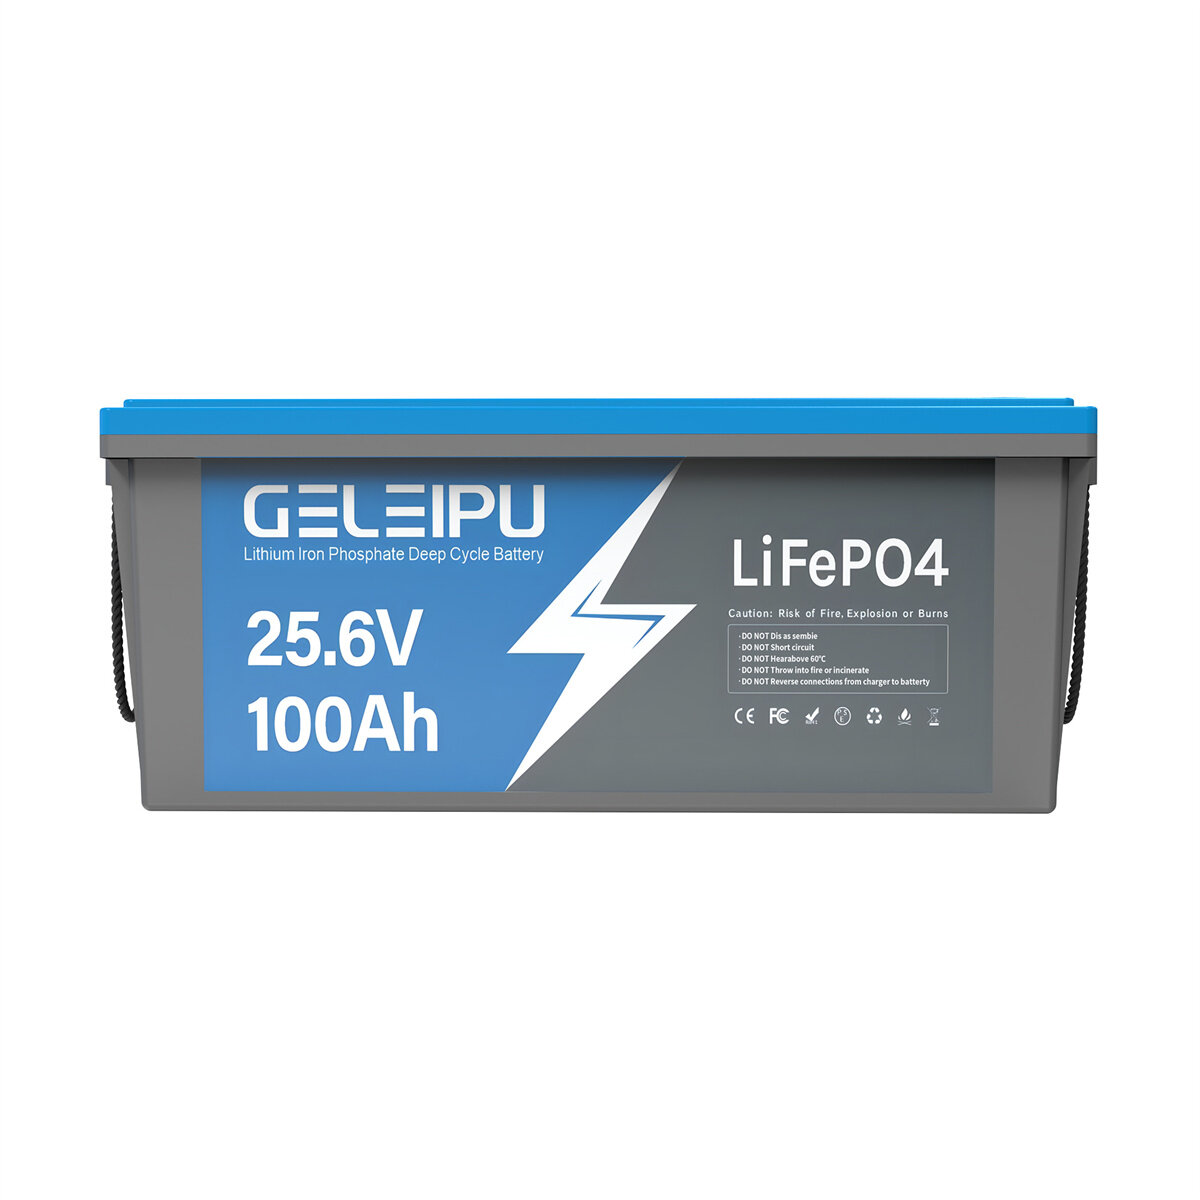 [EU Direct] Bateria LiFePO4 GELEIPU 24V 25.6V 100Ah, 2560Wh, Recarregável com BMS 100A integrado, Perfeita para Motores de Pesca e Sistemas Solares.